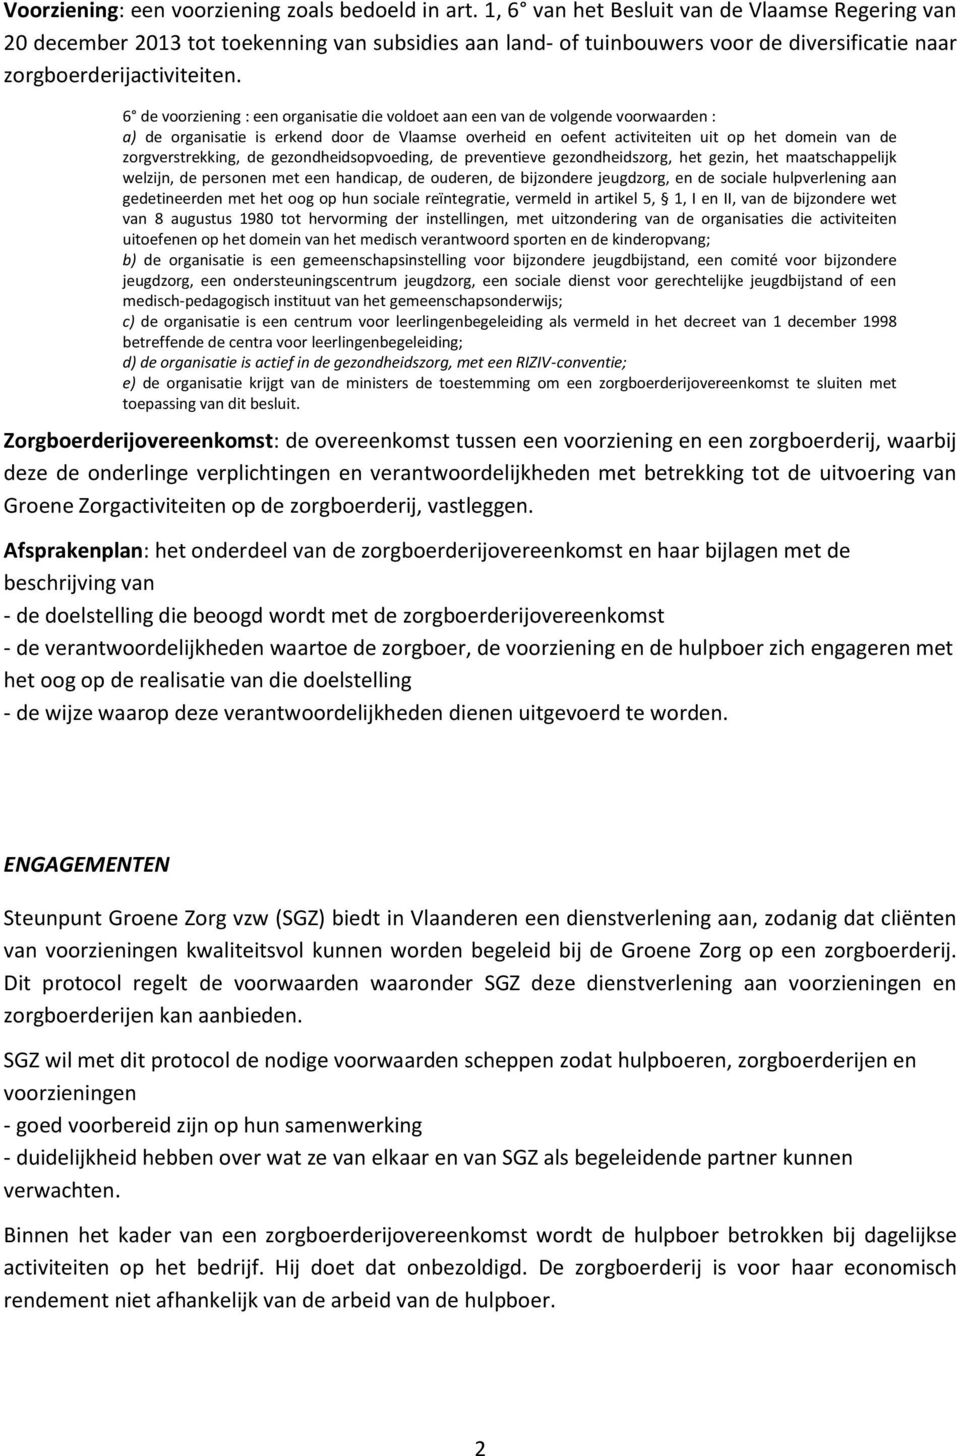 6 de voorziening : een organisatie die voldoet aan een van de volgende voorwaarden : a) de organisatie is erkend door de Vlaamse overheid en oefent activiteiten uit op het domein van de